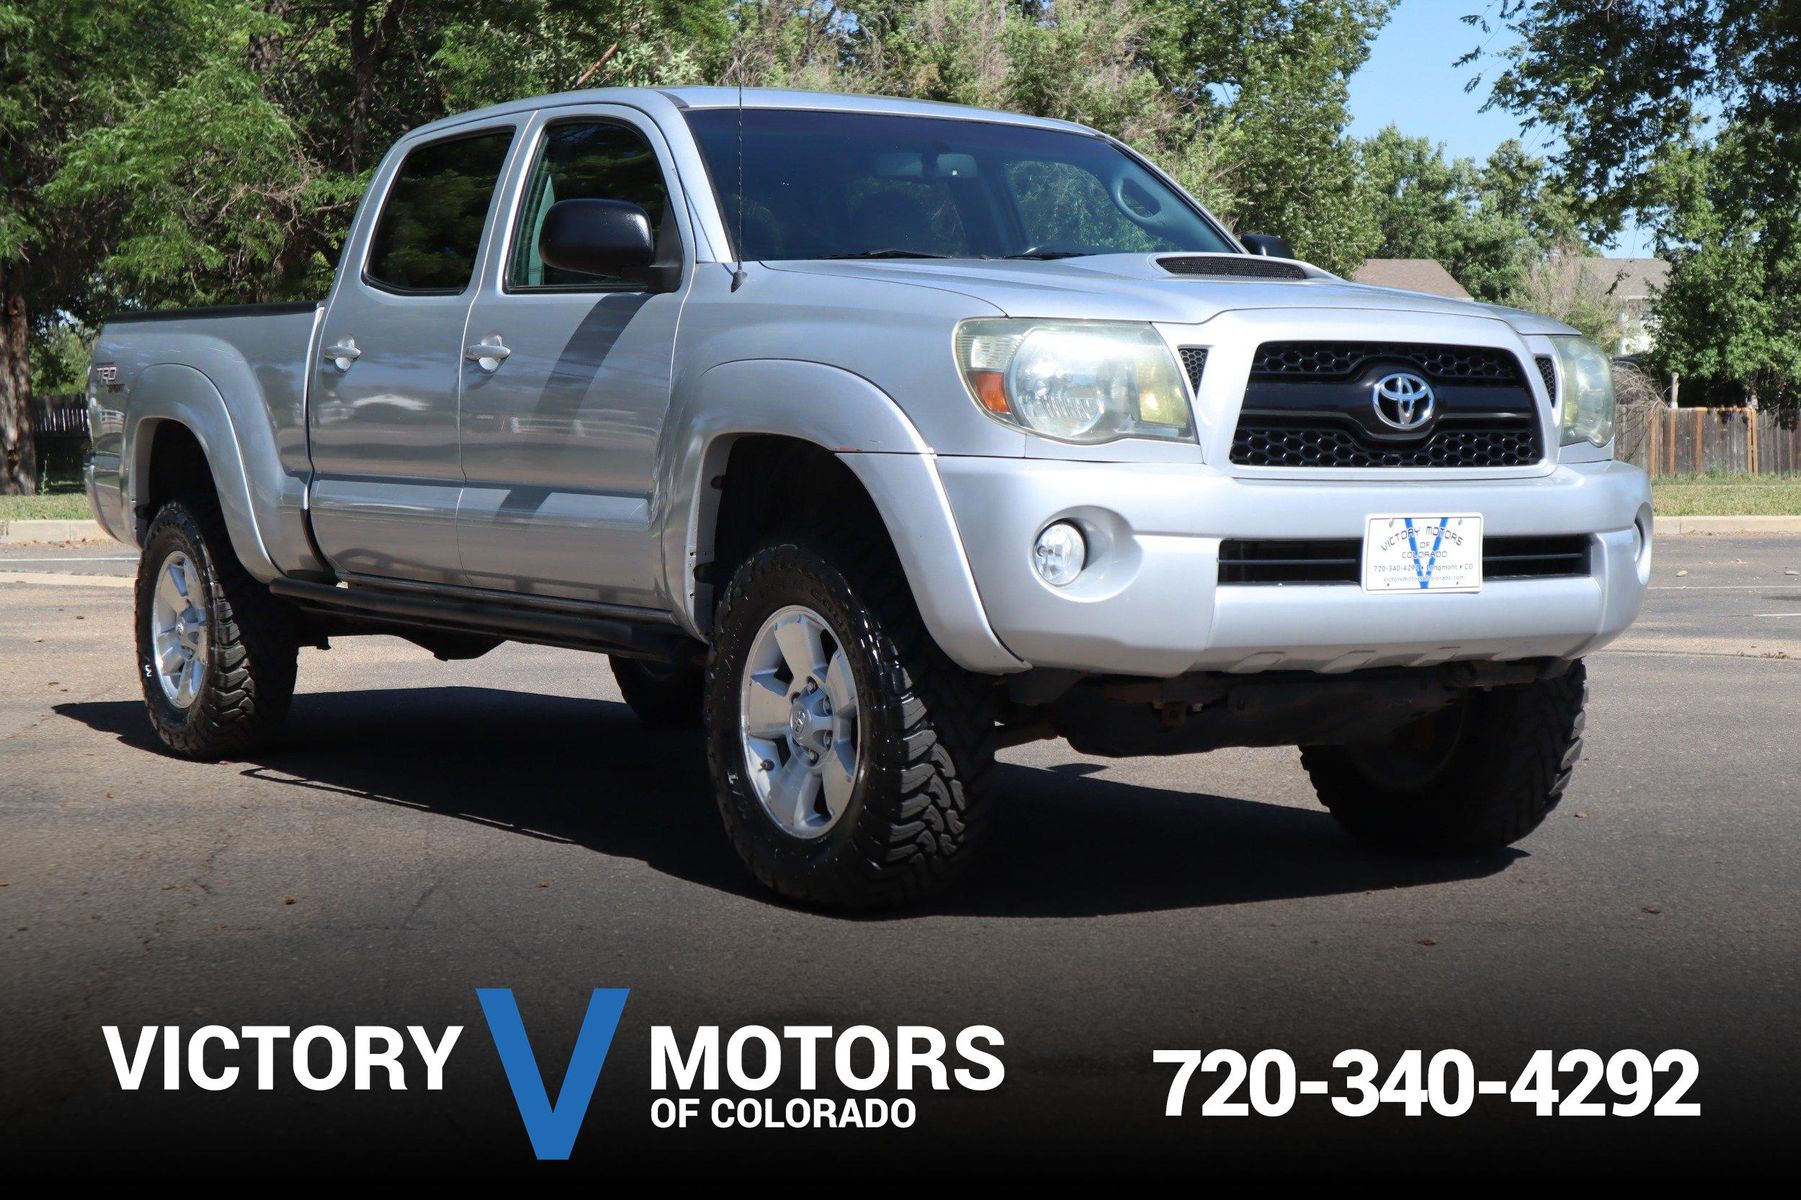 2011 Toyota Tacoma V6 | Victory Motors of Colorado